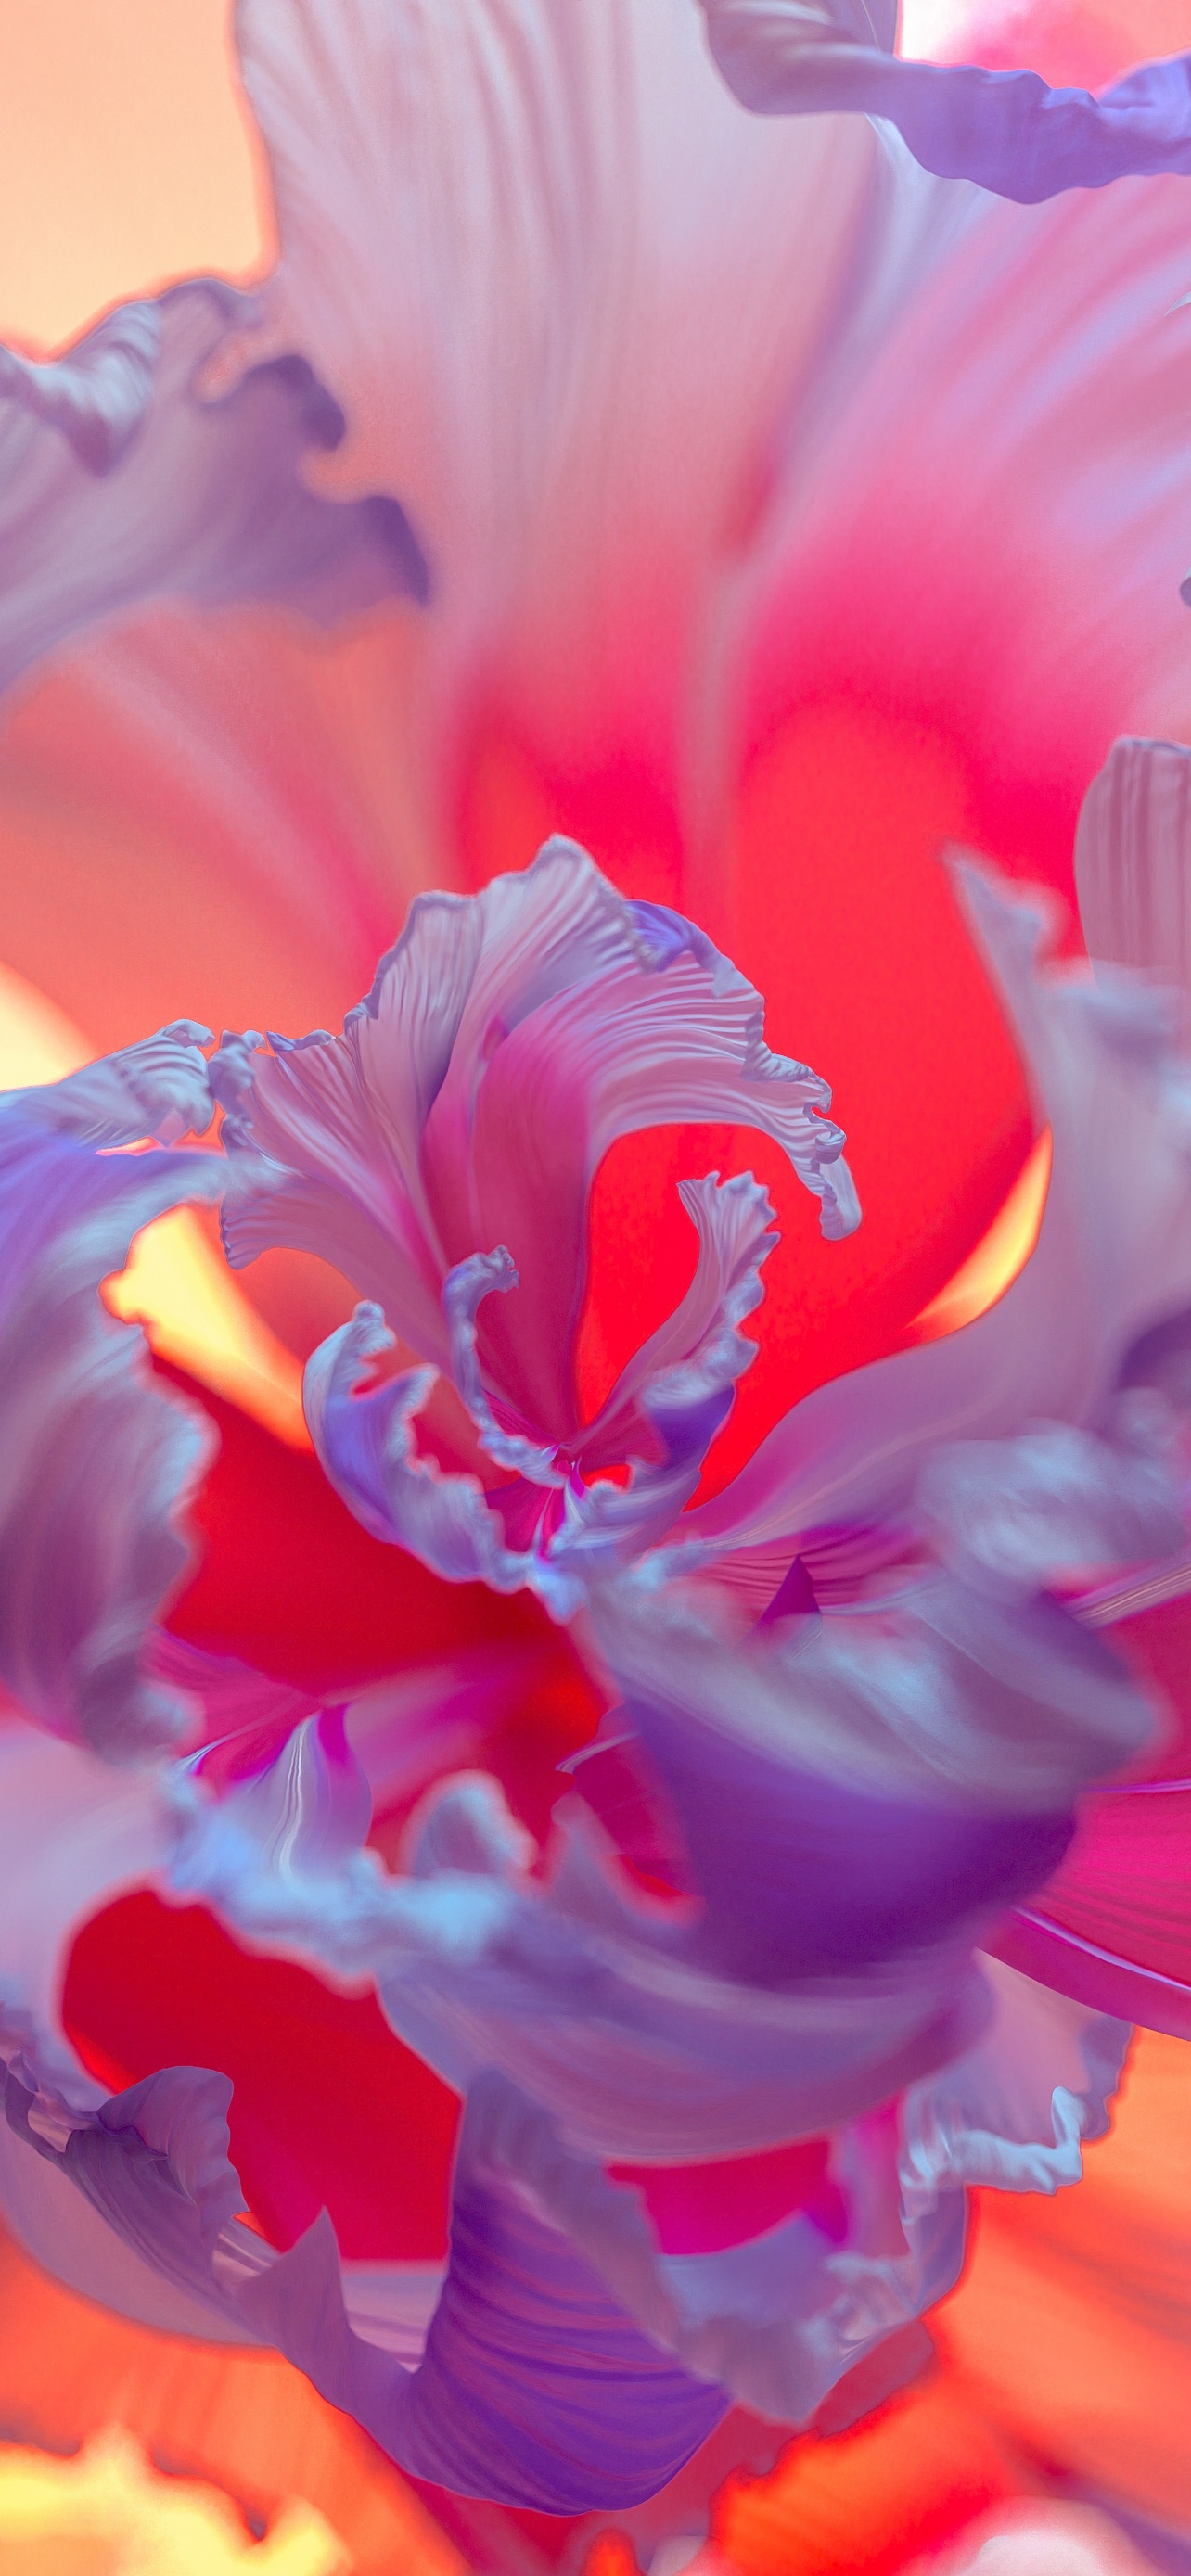 Hoa tím là loài hoa rất đẹp và dễ trồng. Hãy cùng ngắm nhìn vẻ đẹp tuyệt vời của hoa tím trong hình ảnh liên quan.